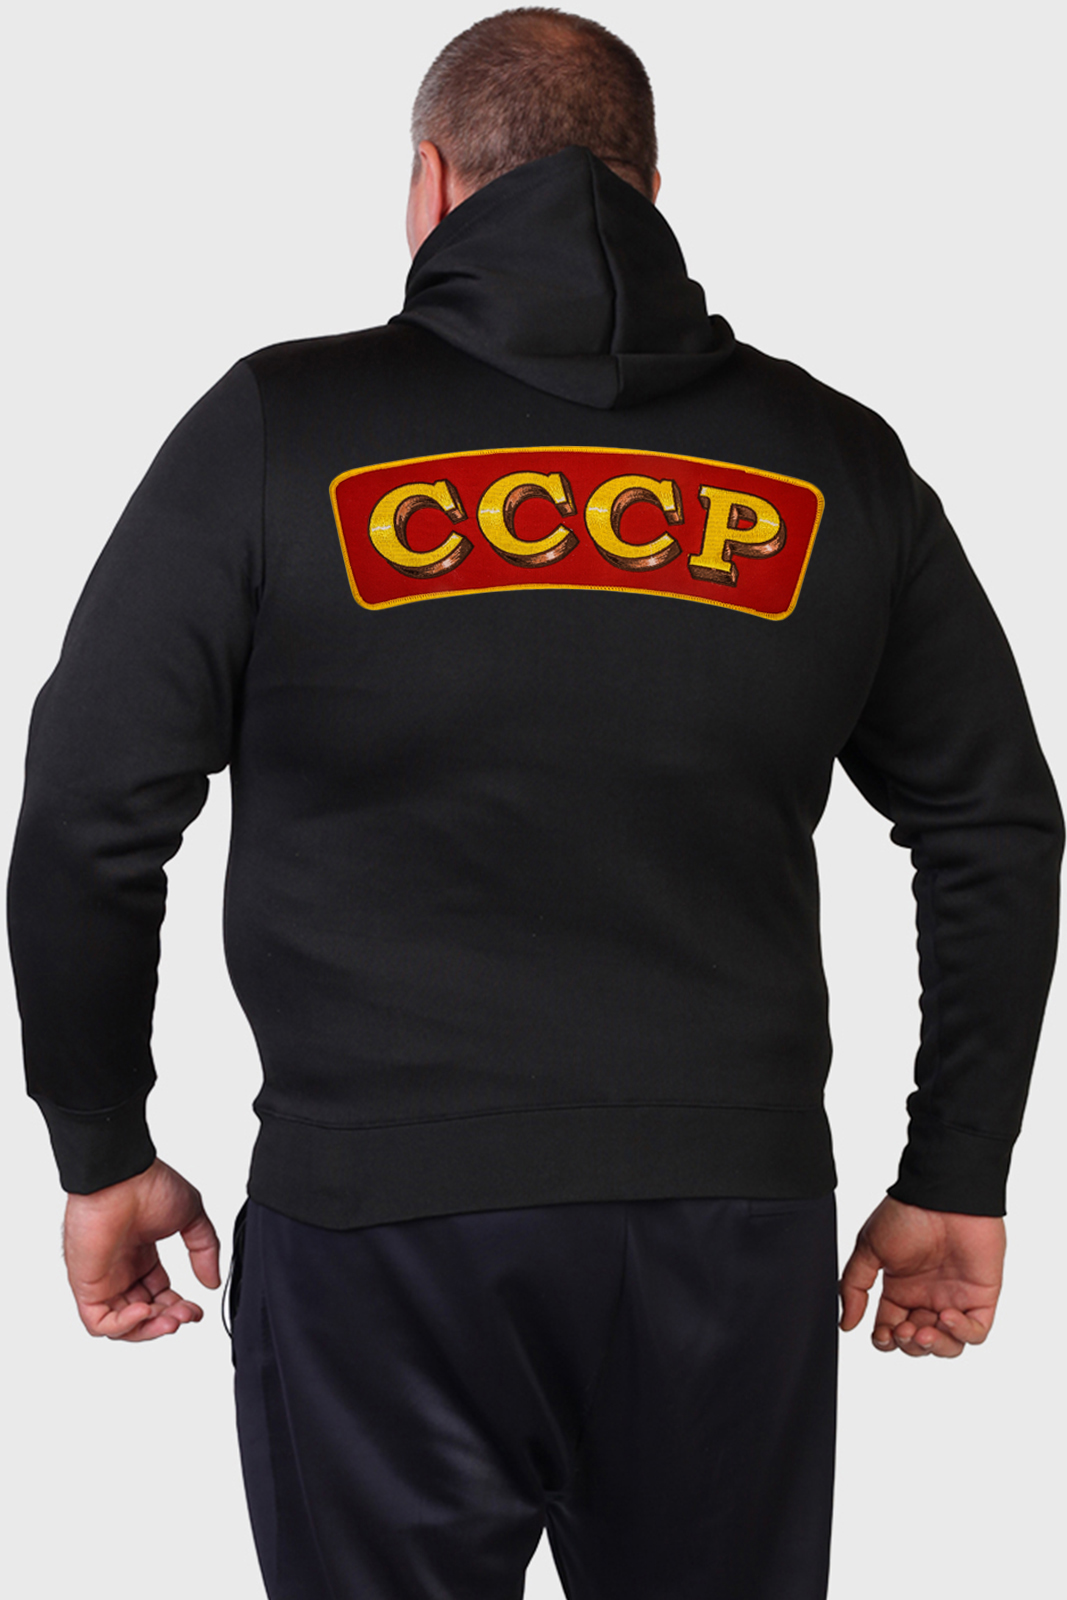 Недорогие толстовки в советском дизайне для мужчин